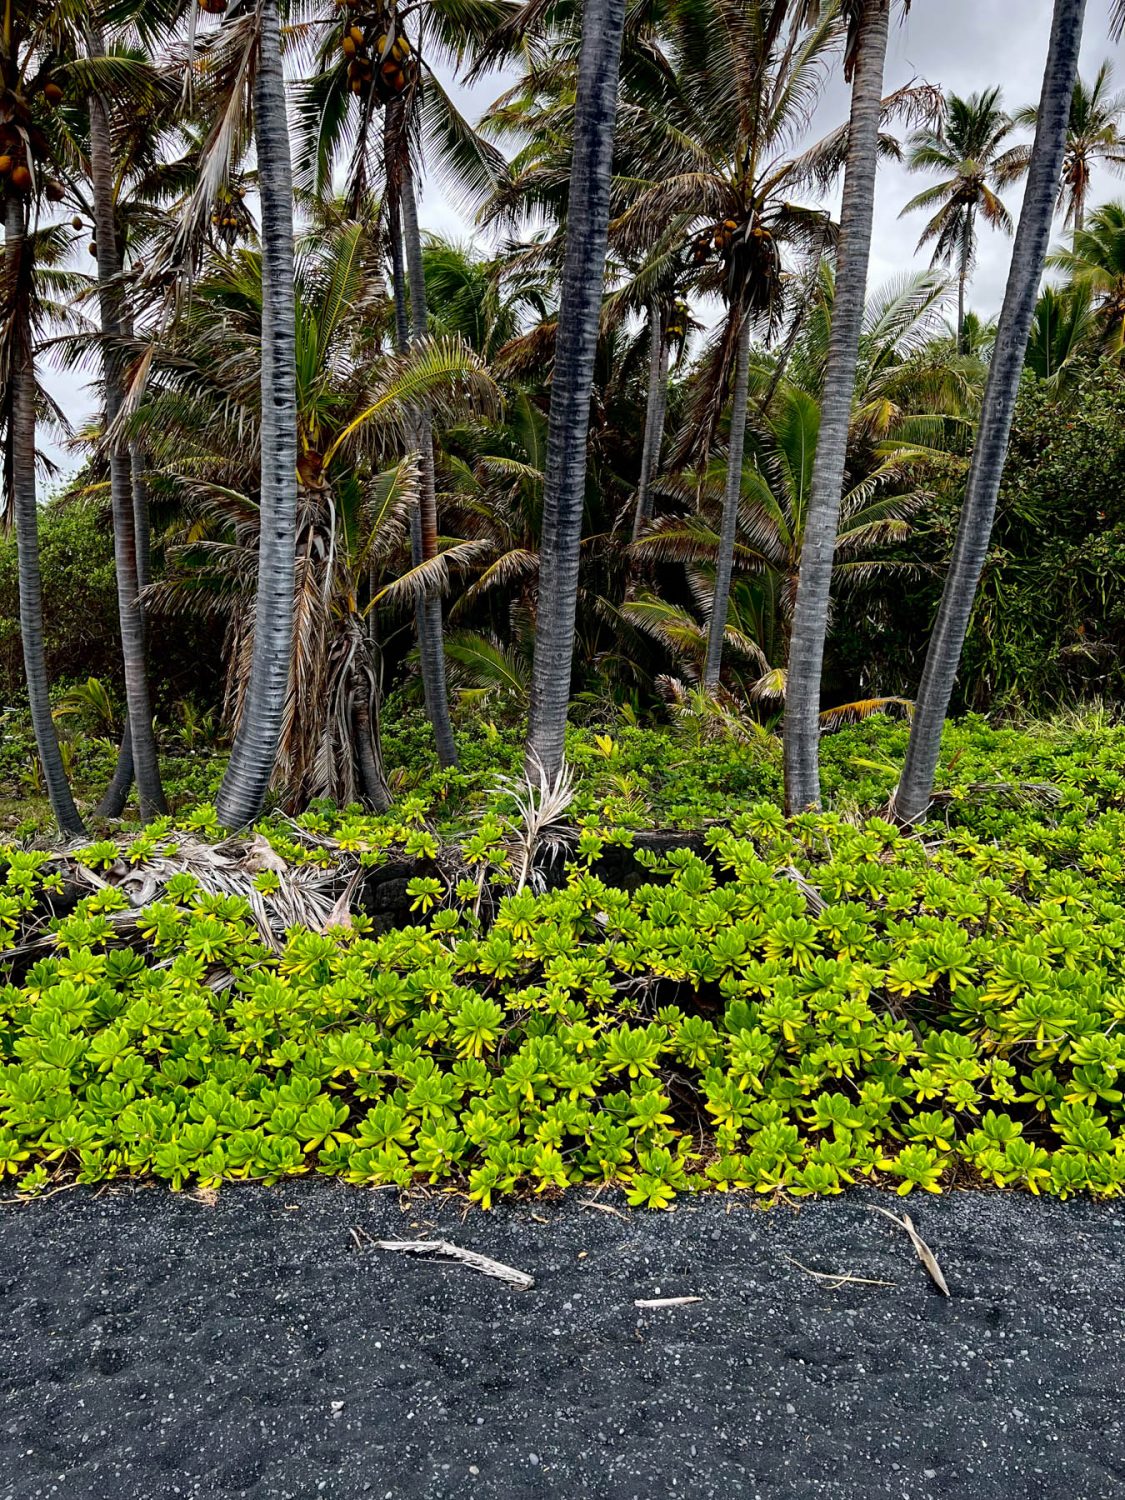 Punaluʻu Black Sands Beach